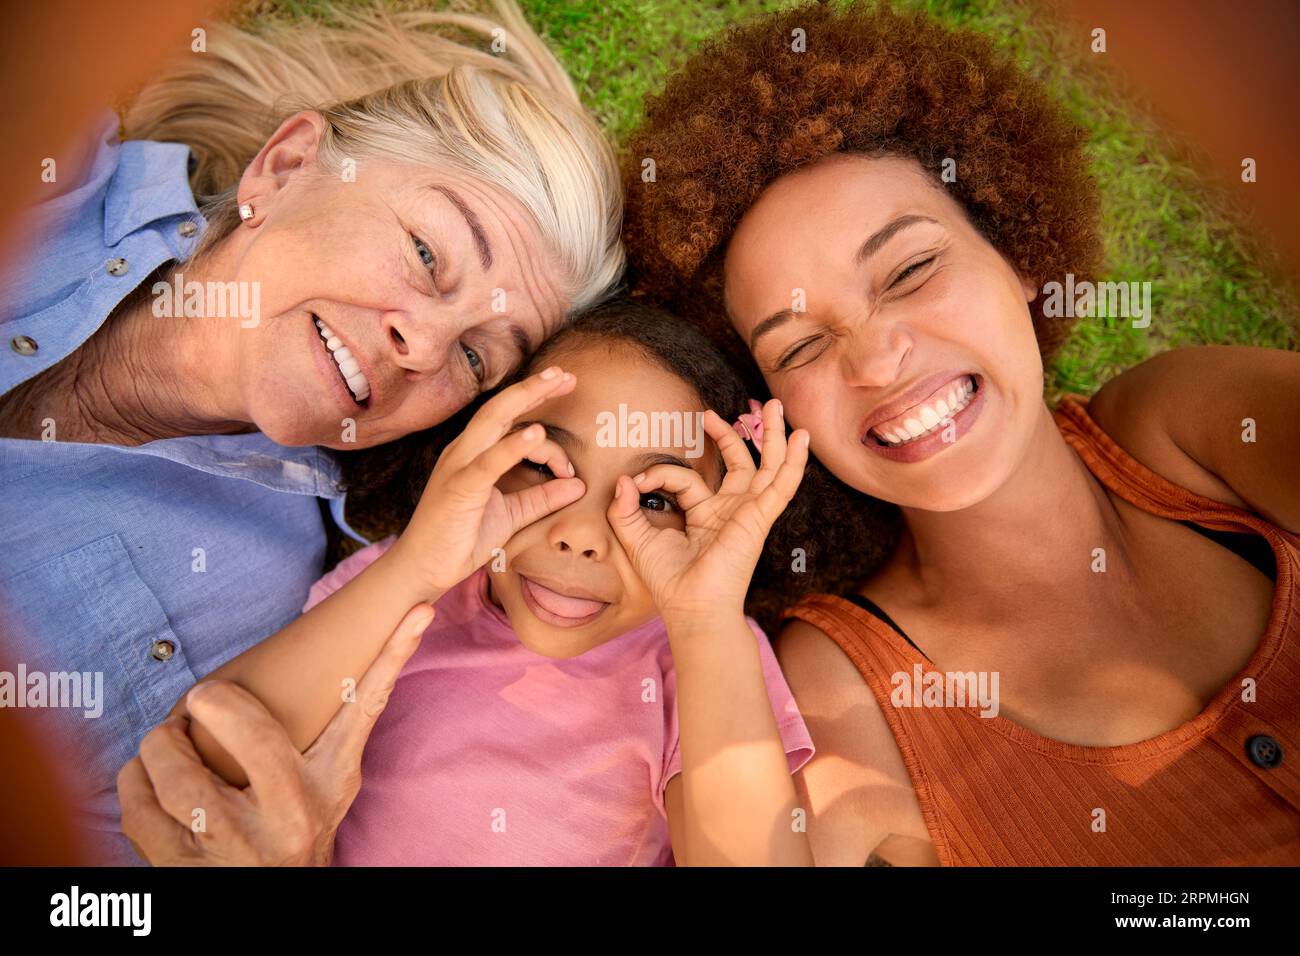 POV Overhead Shot Of Multi-Generation Female Family Lying On Grass Taking Selfie On Mobile Phone Stock Photo